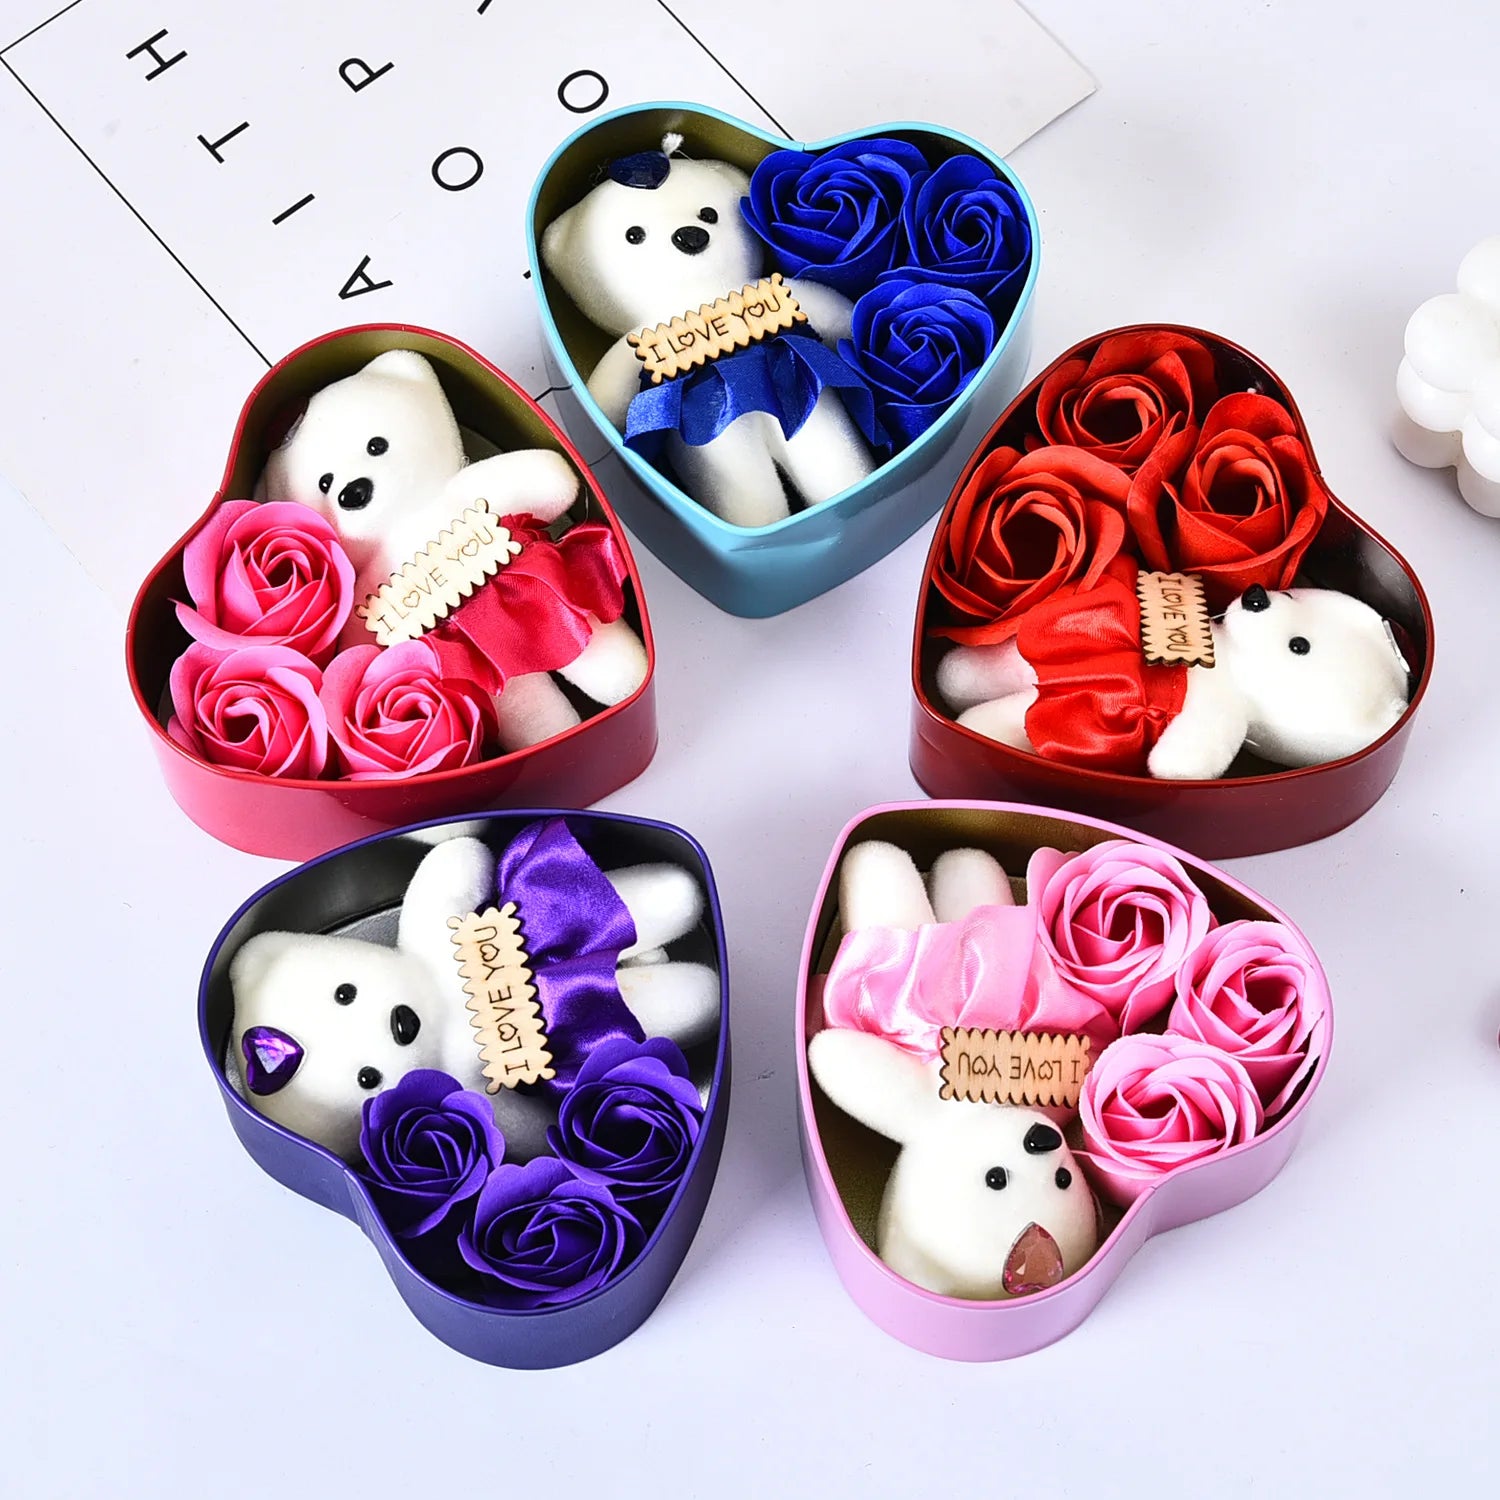 Yo cho künstliche Blume 3/4/6 PCs Rosen Bären Seife Blumen Geschenkbox Valentinstag Muttertag Hochzeit Newyar Gift für Frau